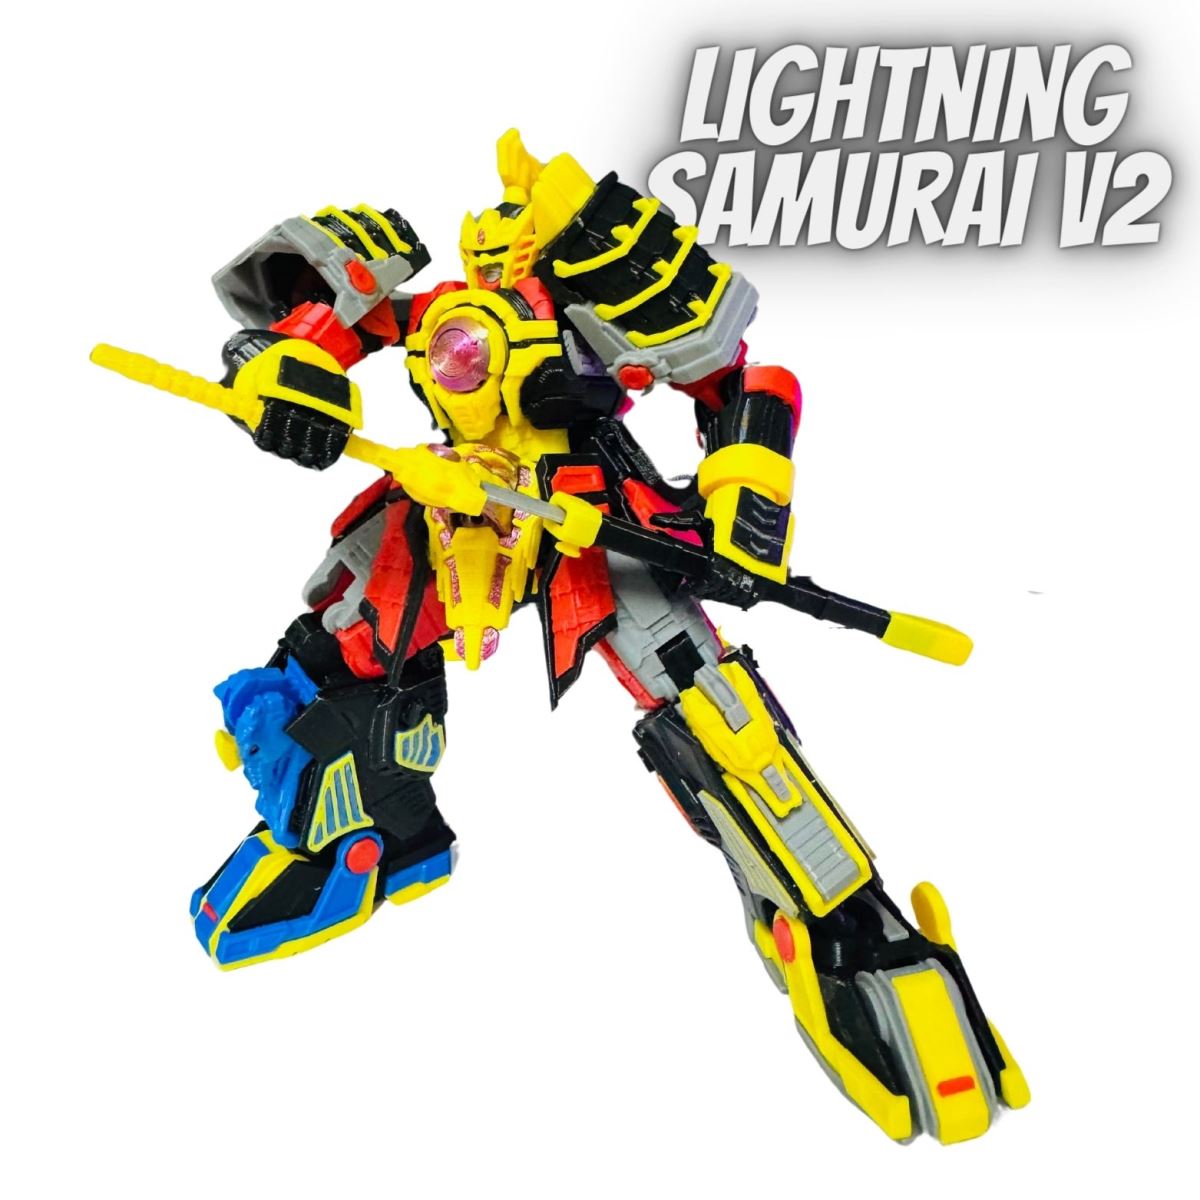 Lightning Samurai V2